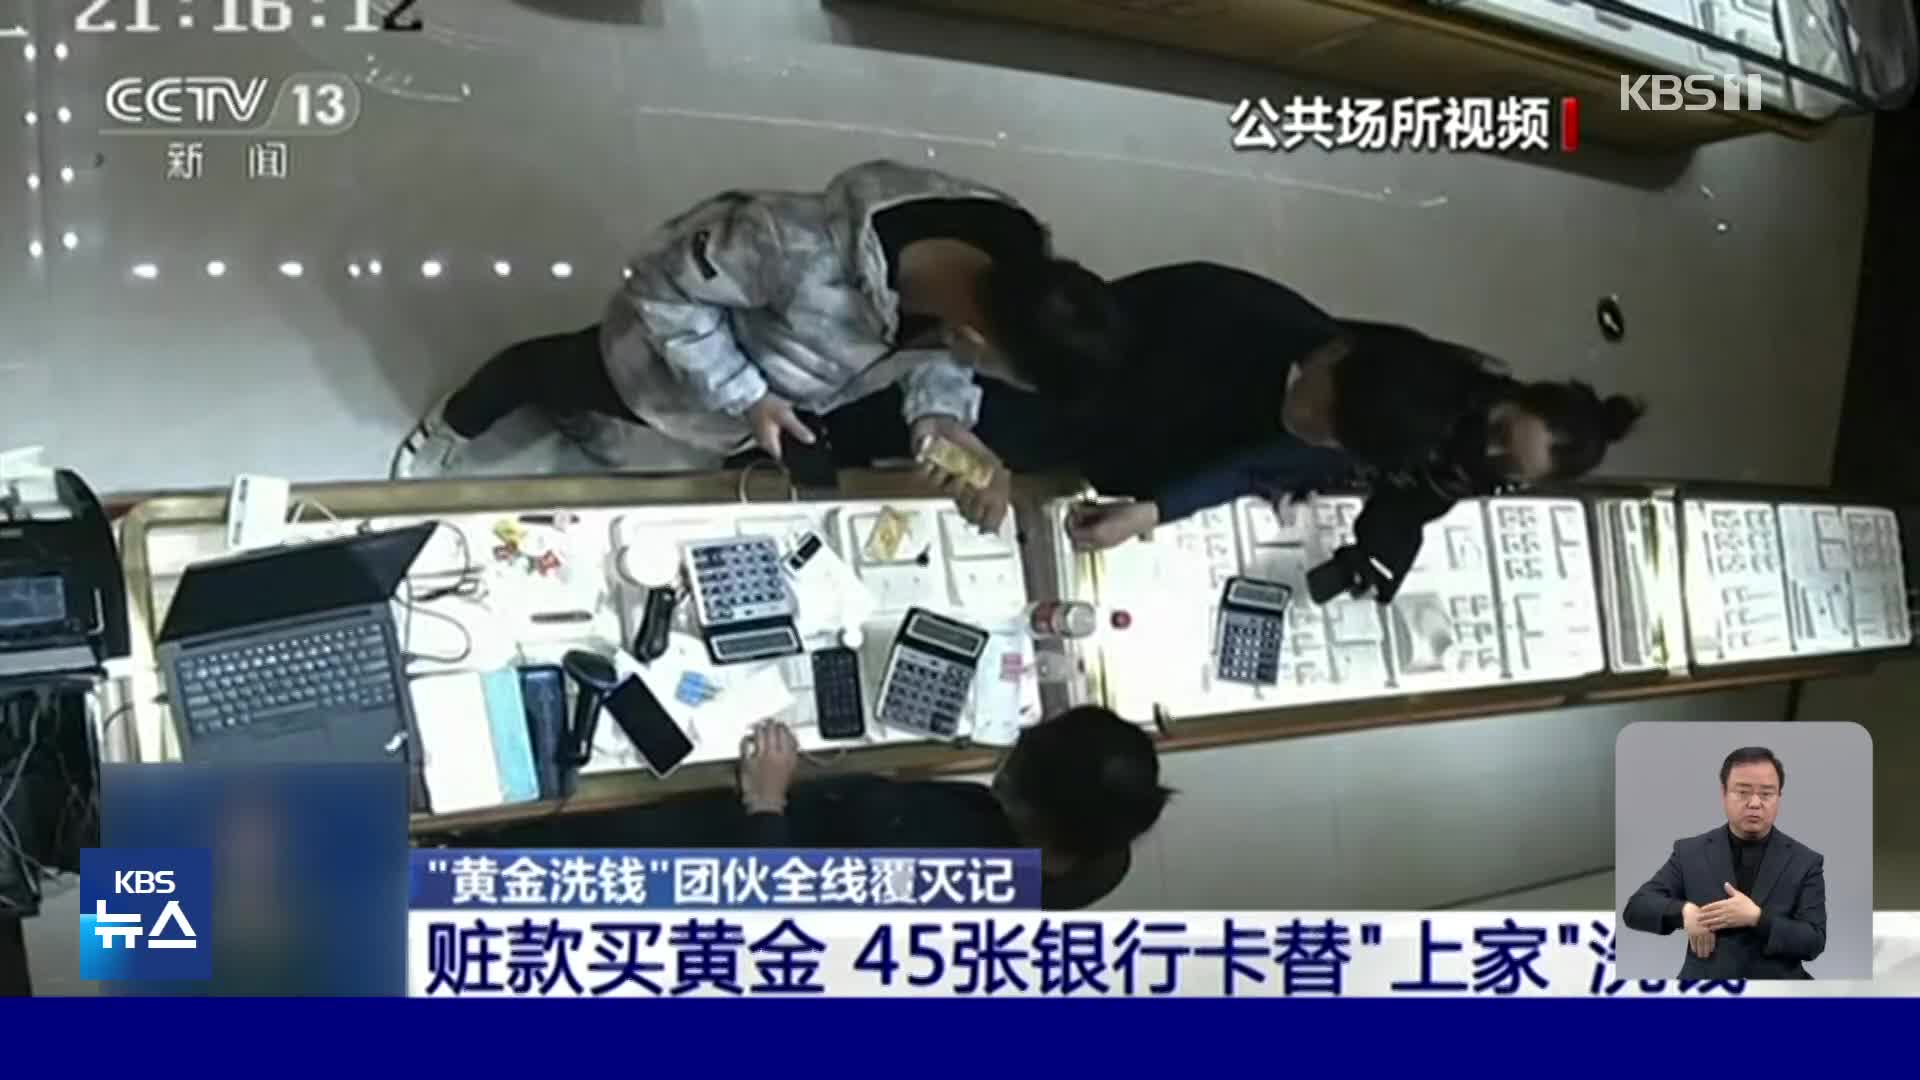 중국, 금은방 돌며 금괴 100kg 사들인 전화금융사기단